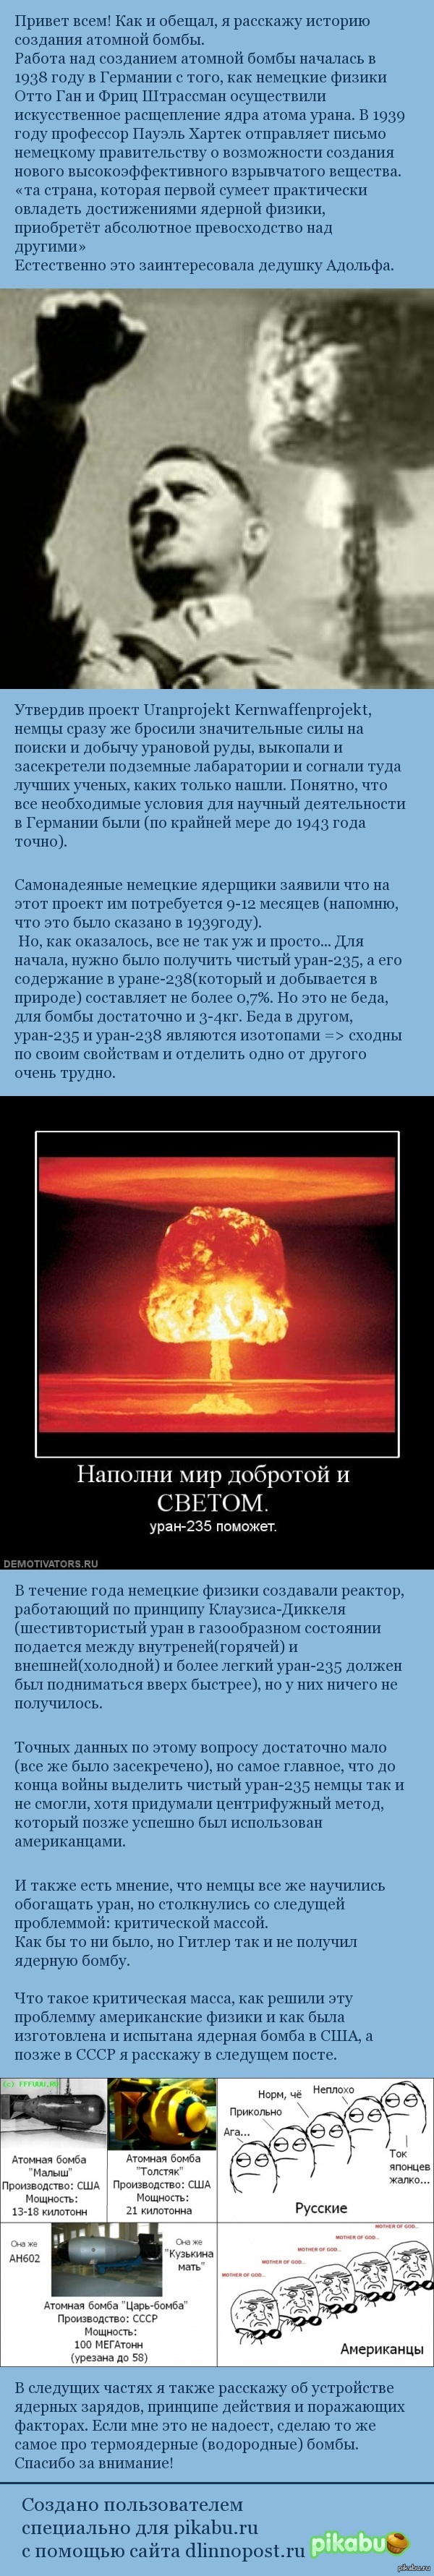         1  <a href="http://pikabu.ru/story/atomnaya_i_termoyadernaya_bombyi_chast_pervaya_iz_mnogikh_2539089">http://pikabu.ru/story/_2539089</a>